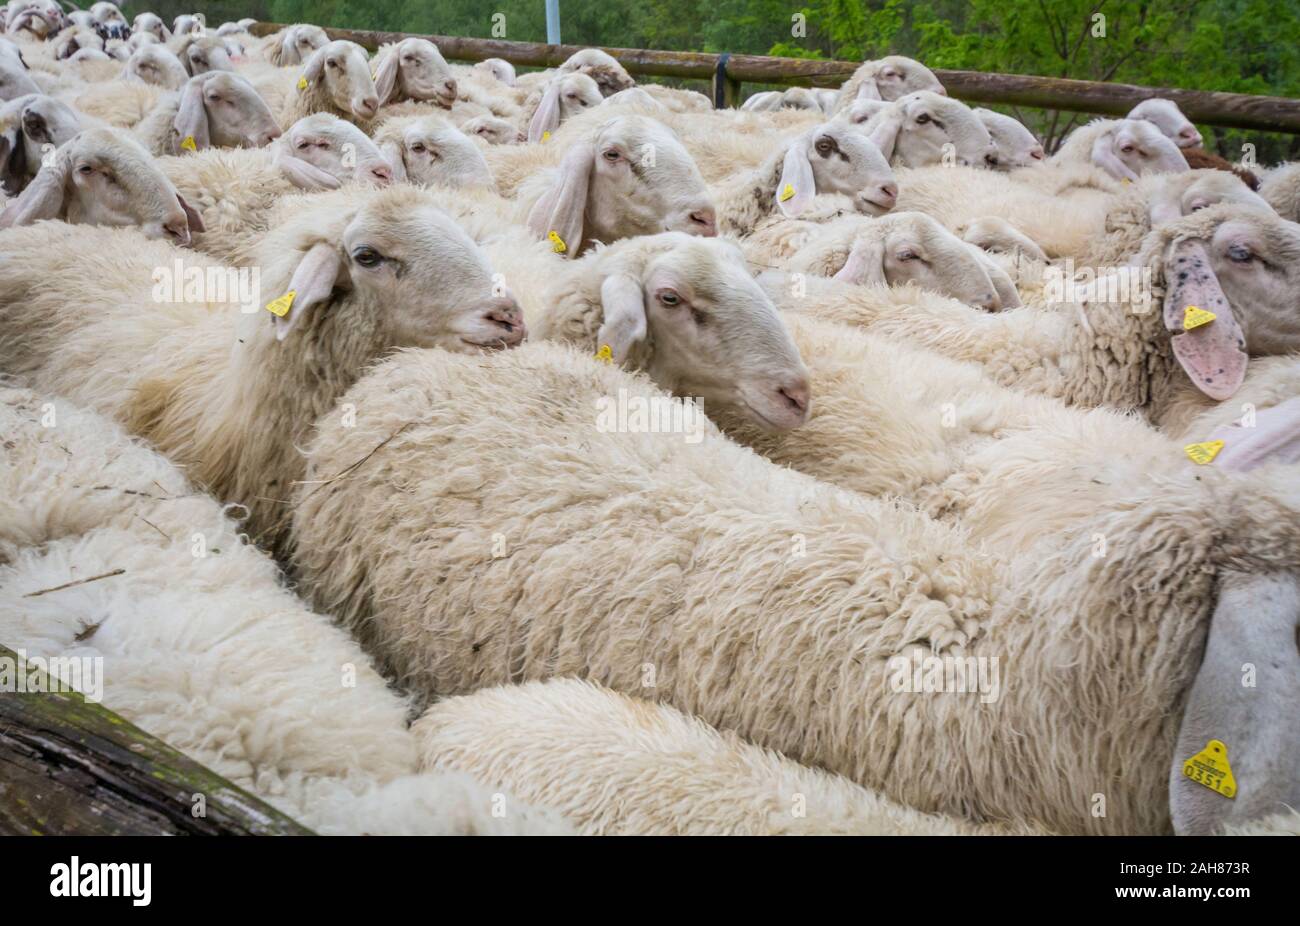 Grande gregge di pecore in fase di allevamento, Trentino Alto Adige, nord Italia - Gregge di pecore bianche Foto Stock